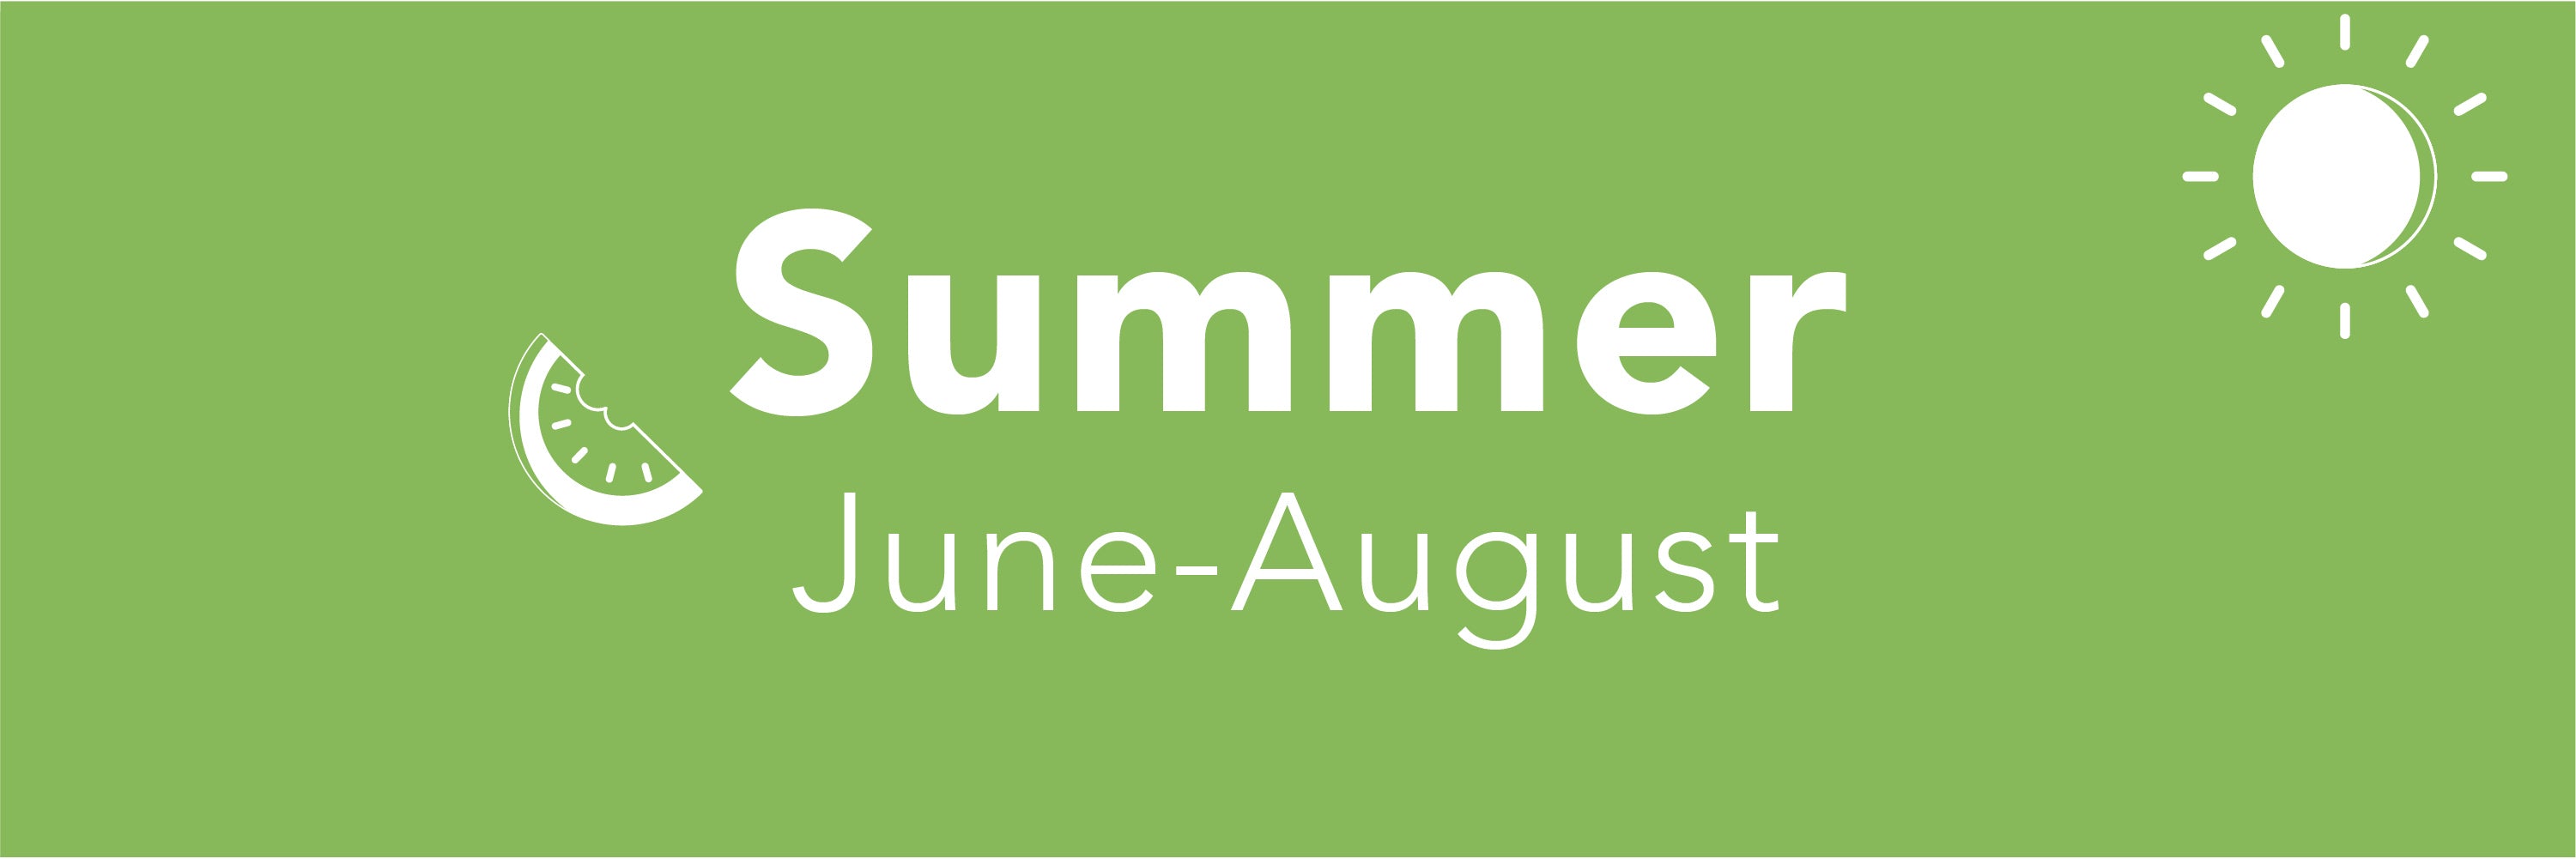 Summer (June-August)